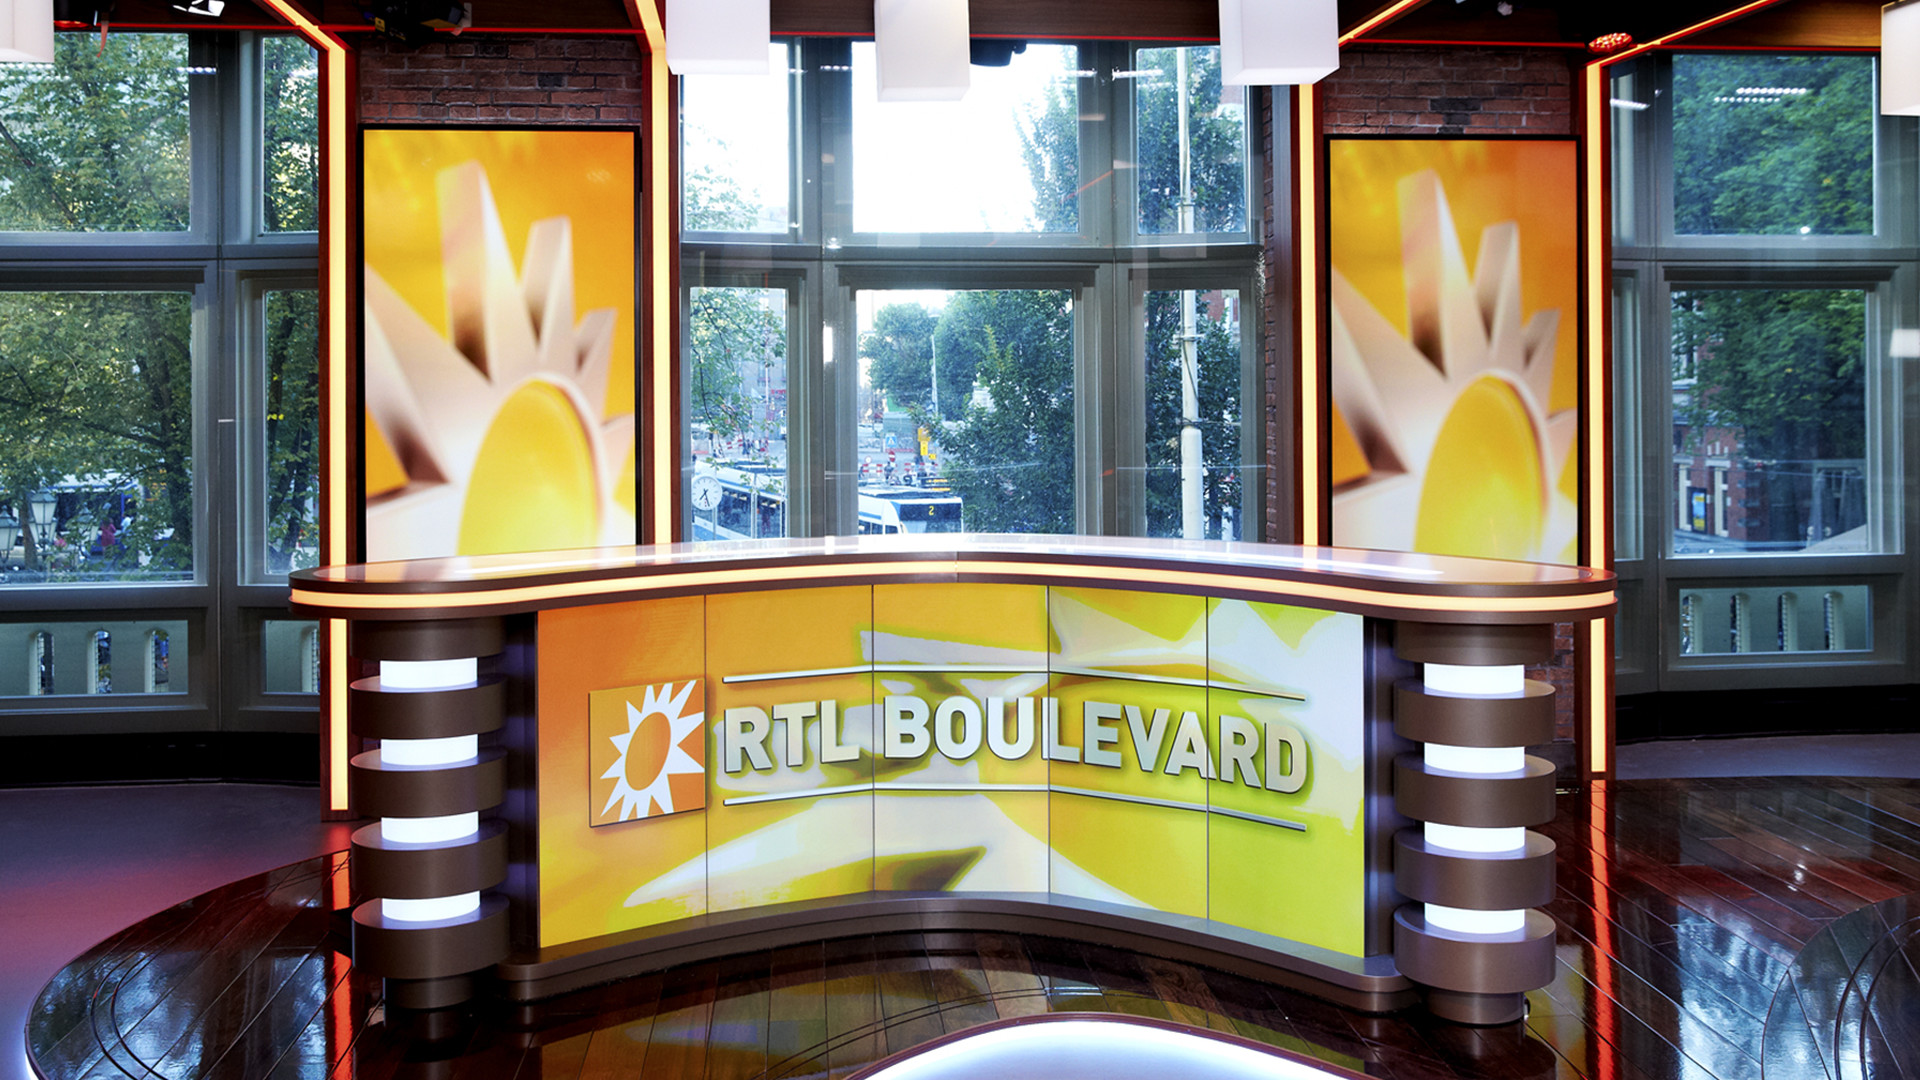 Dít is de nieuwe presentator van RTL Boulevard